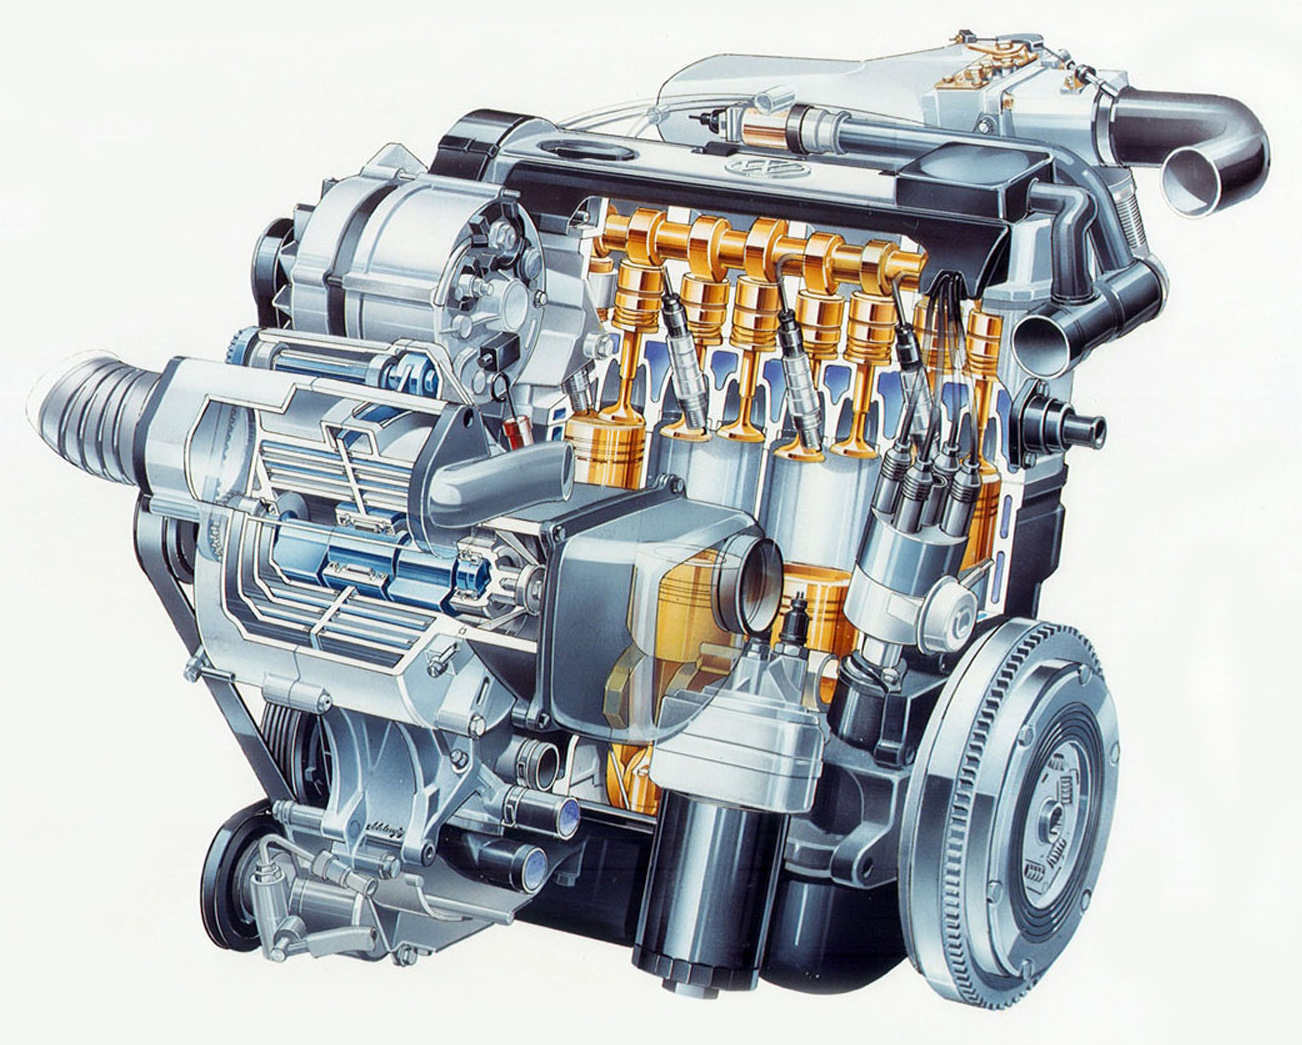 Дизельные двигатели volkswagen. Двигатель g60. VW Corrado g60. Volkswagen двигатель 1.4 16 клапанов. Мотор vr6 Фольксваген в разрезе.